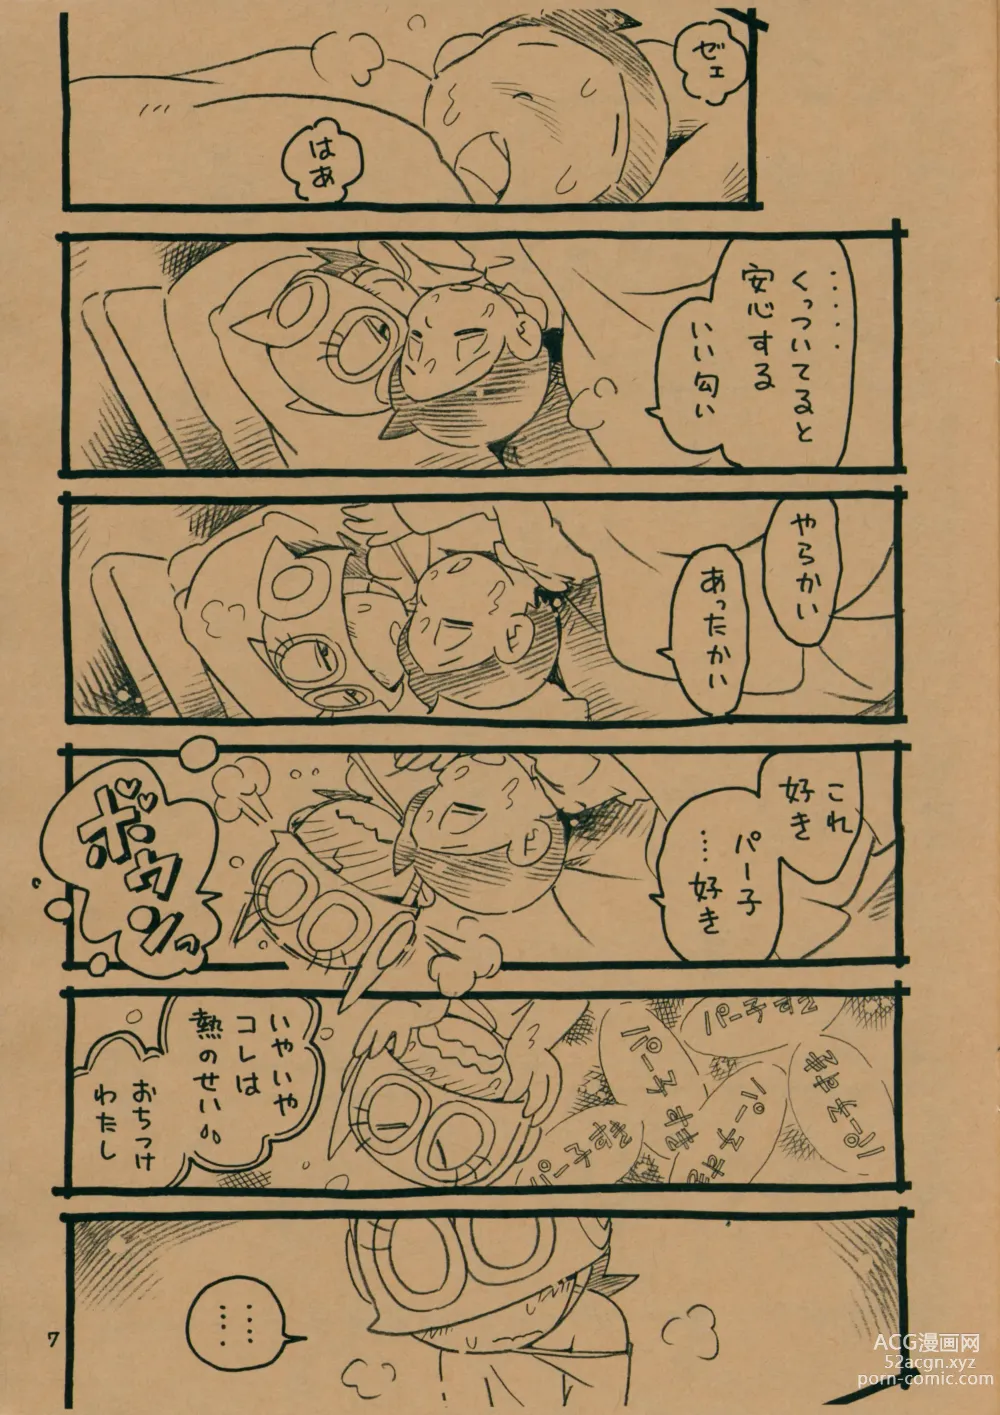 Page 6 of doujinshi Okusuri Chuu